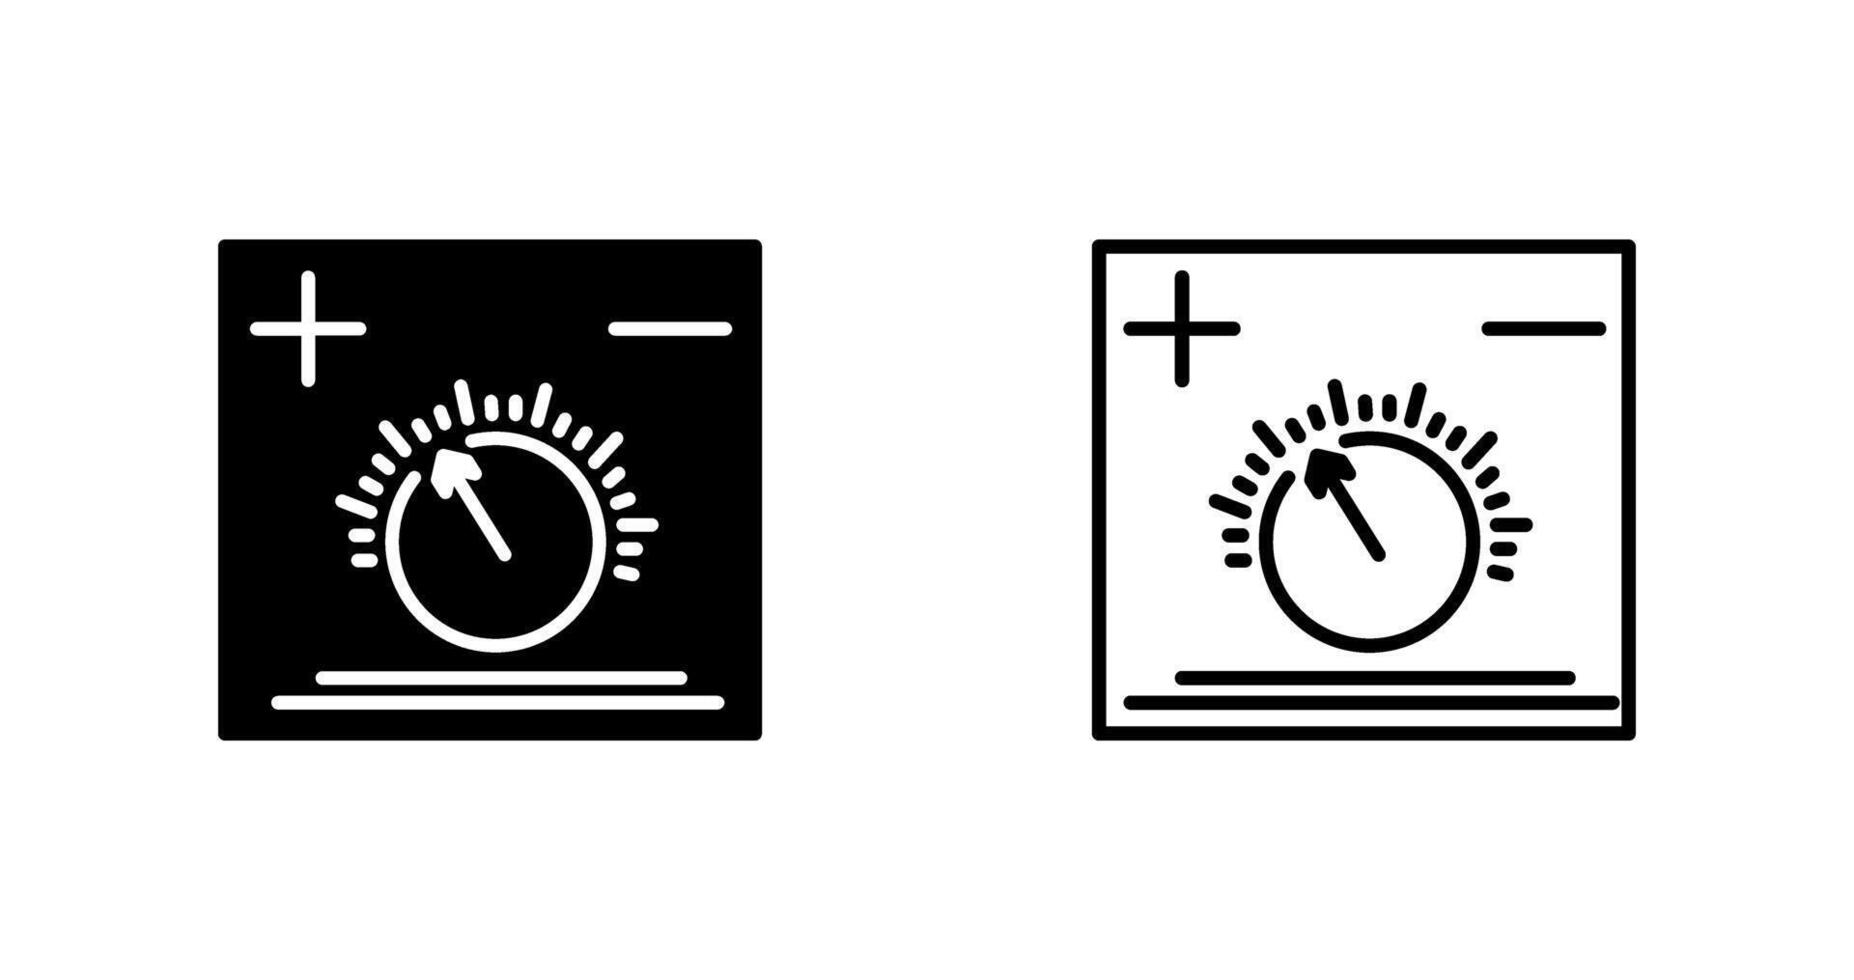 temperatura pomello vettore icona